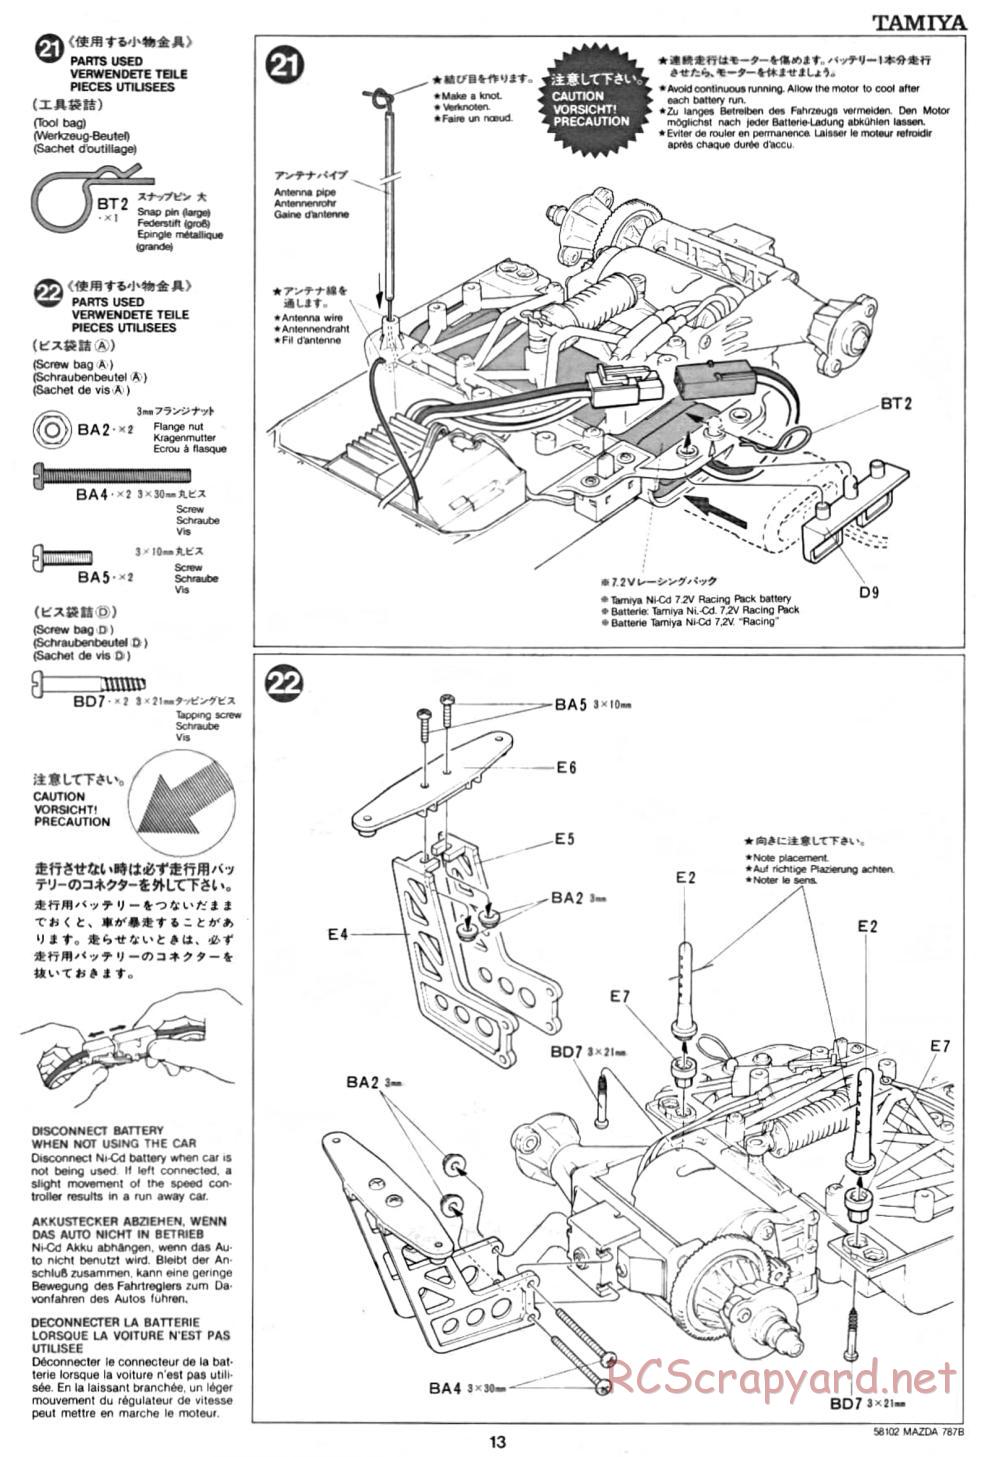 Tamiya - Mazda 787B - Group-C Chassis - Manual - Page 13